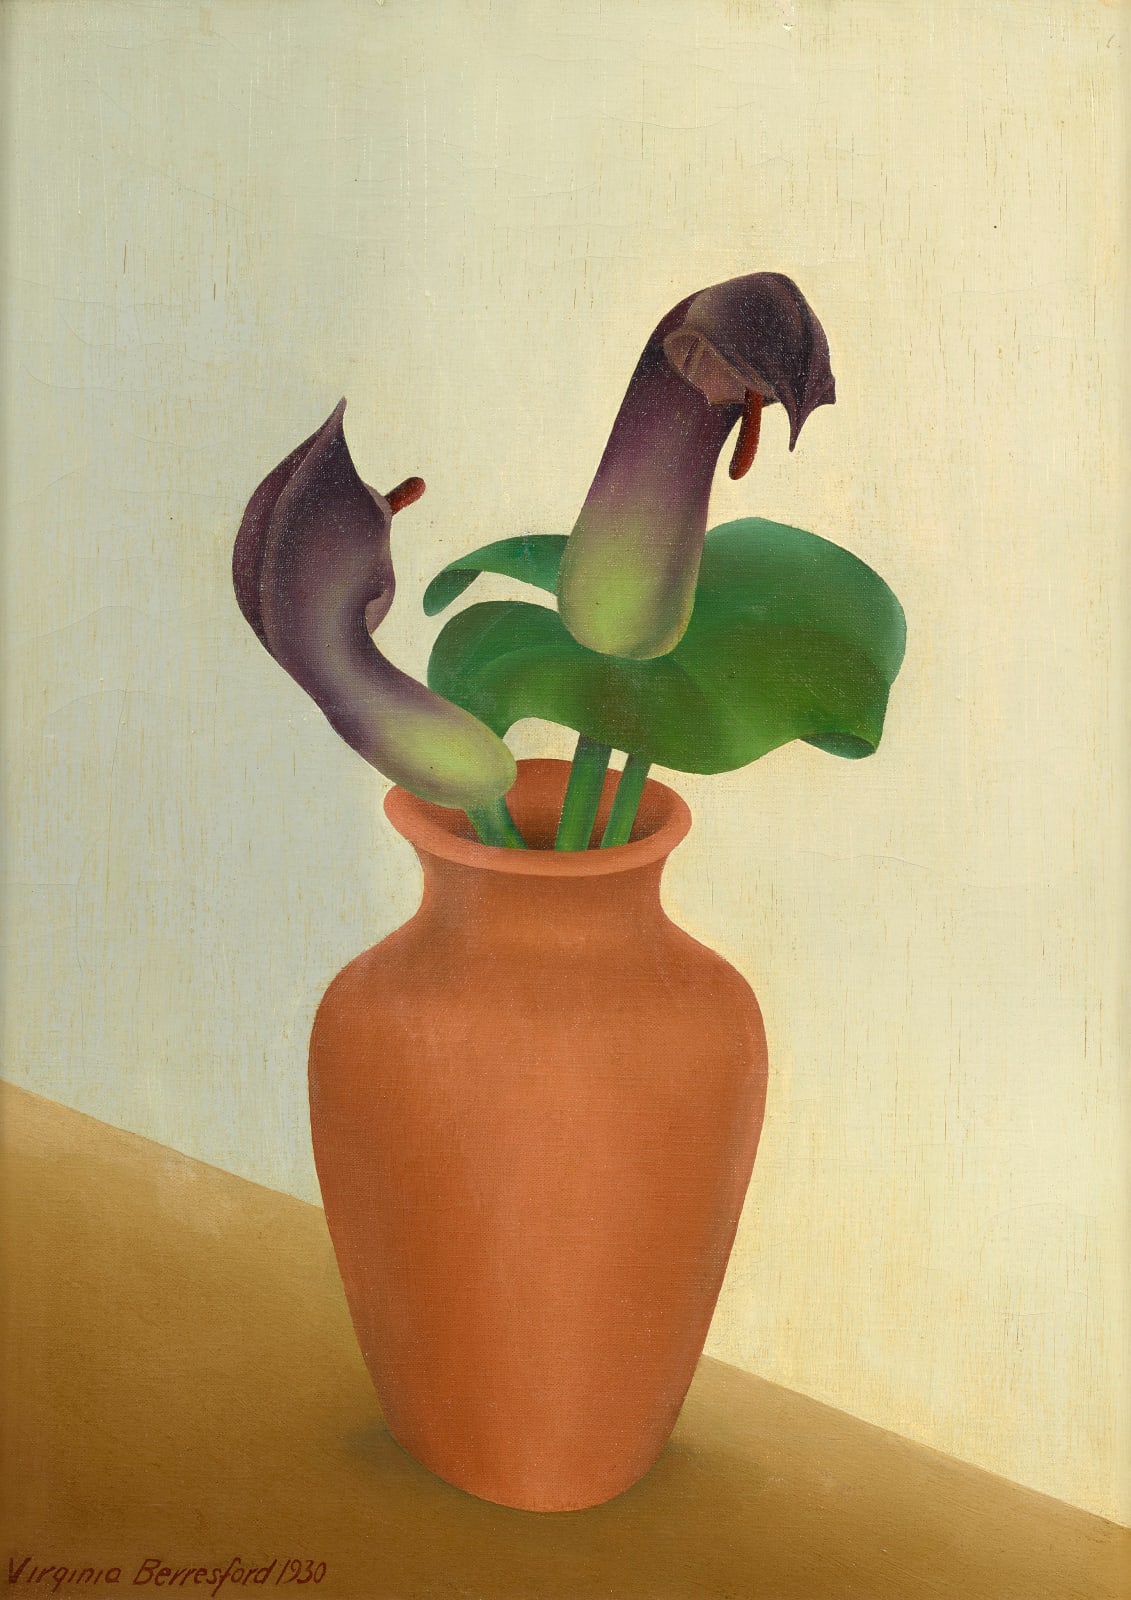 Virginia Berresford, Purple Flowers, 1930